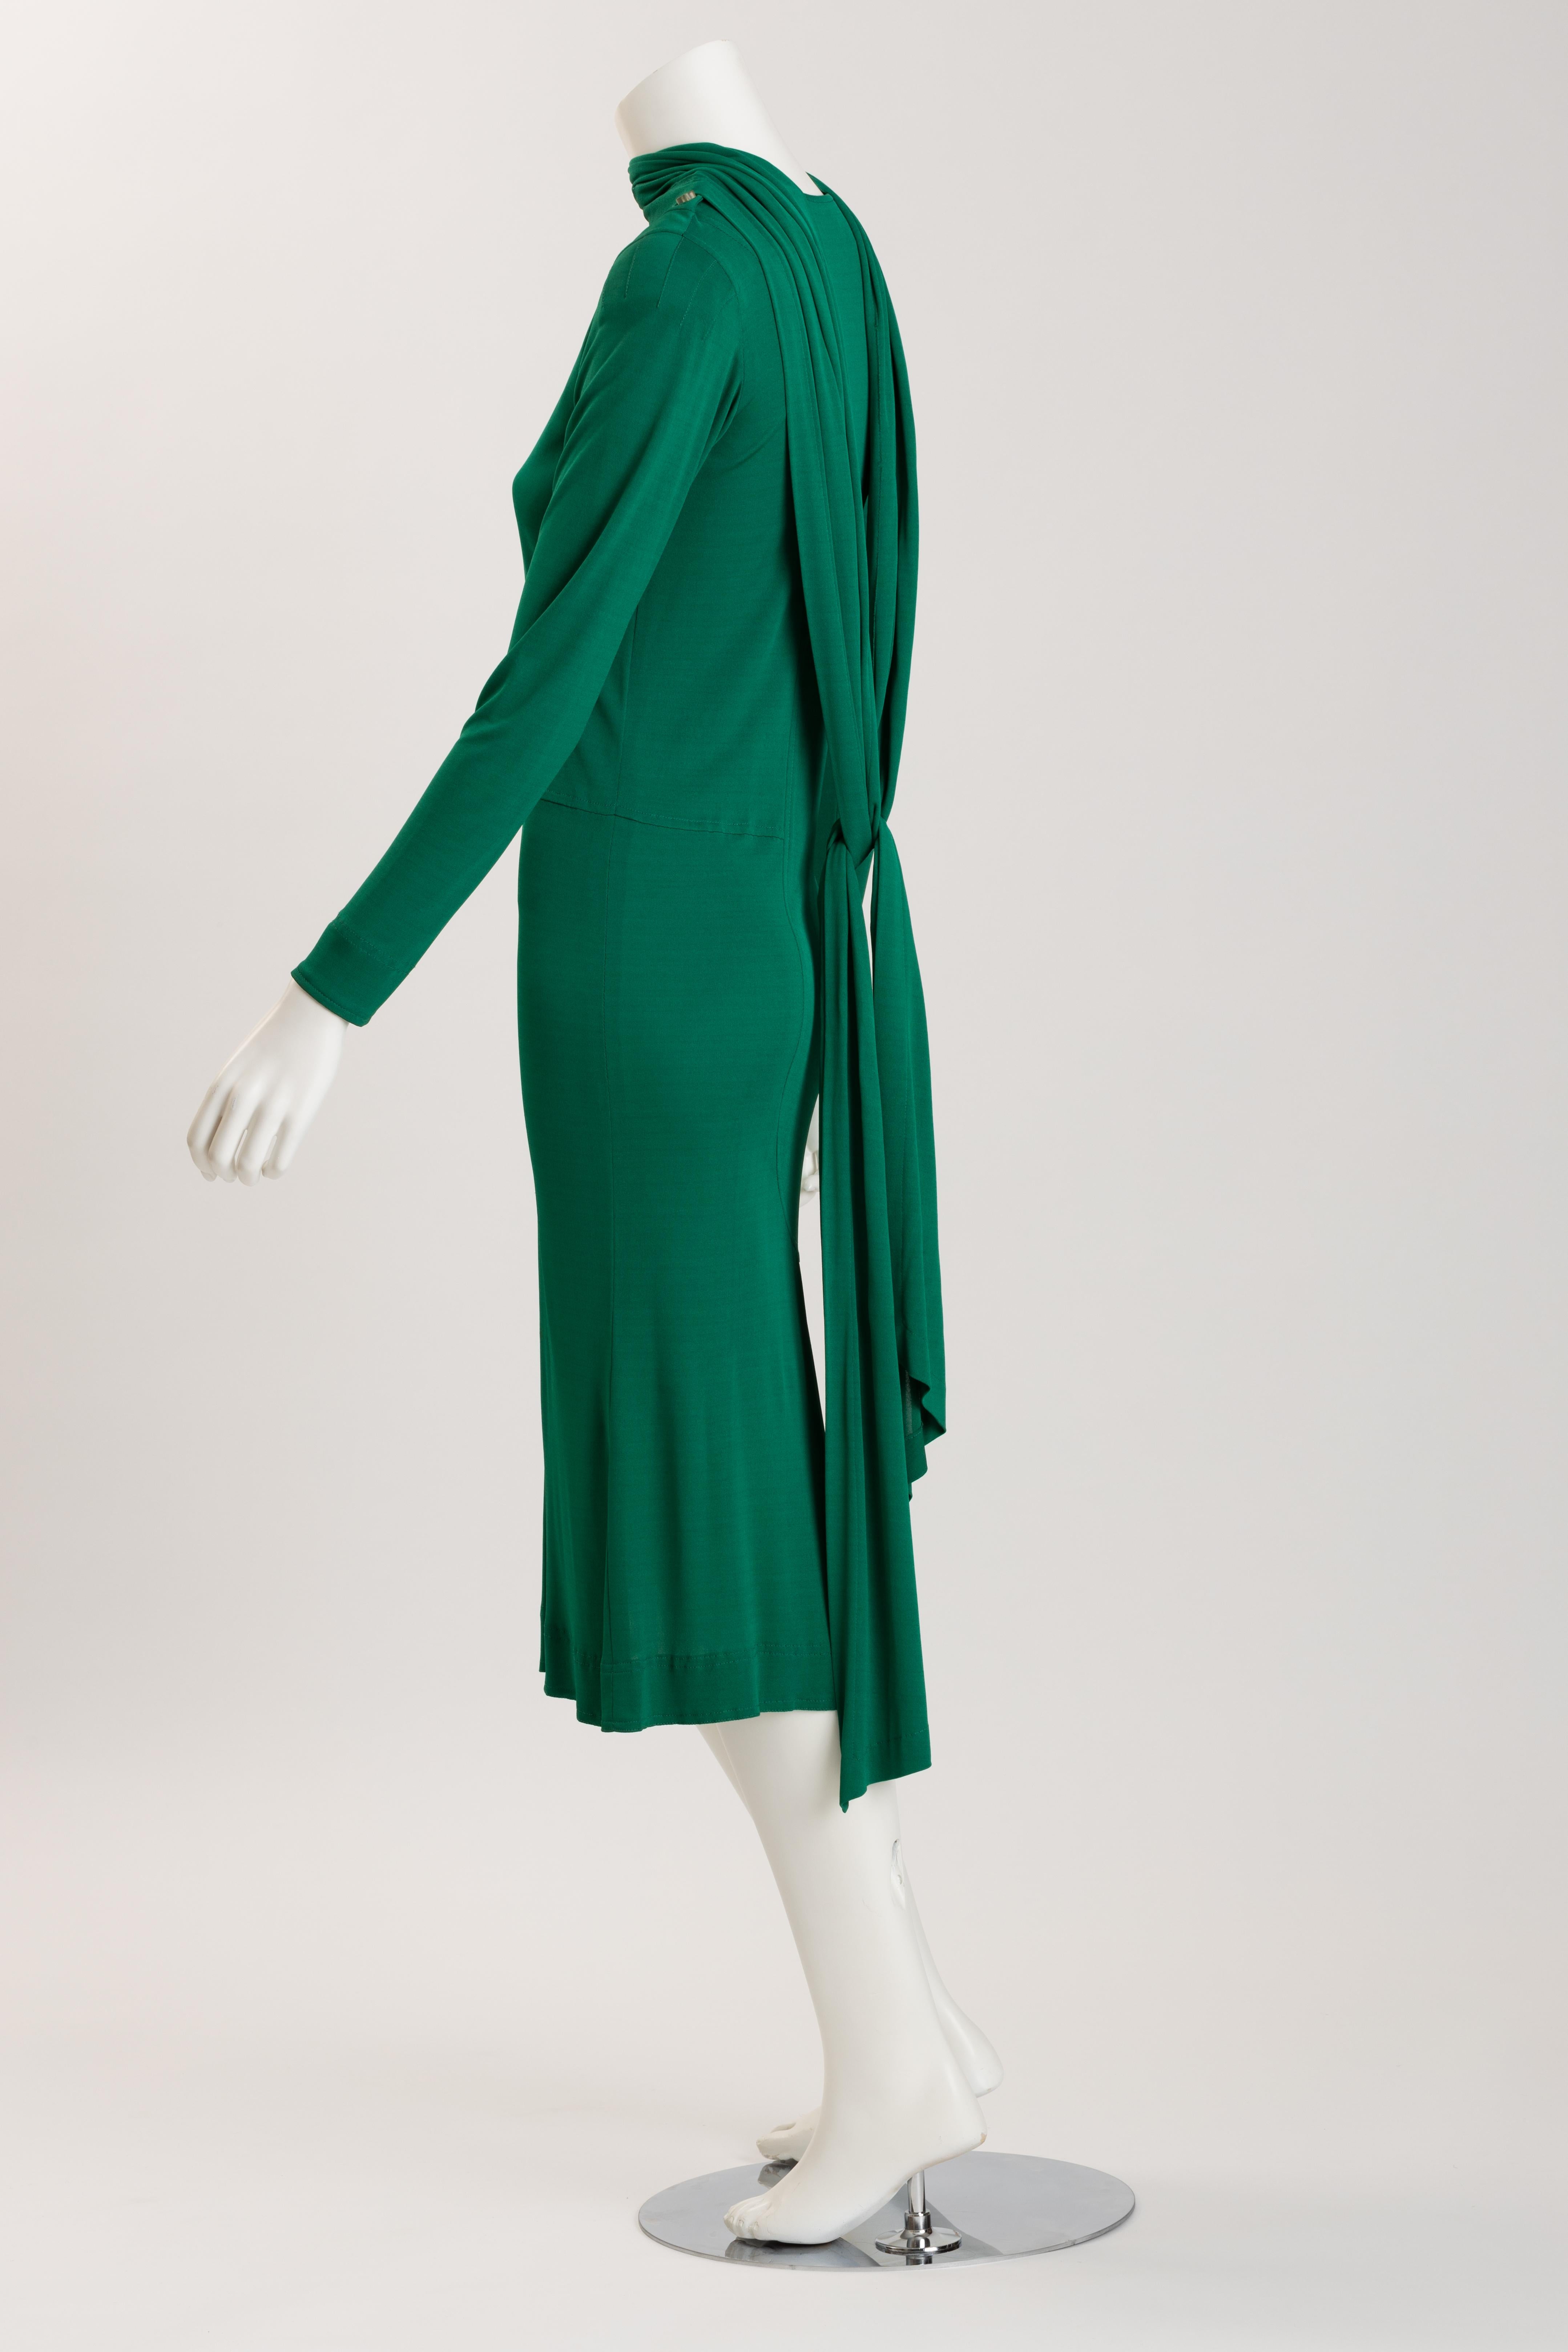 Women's Jean Muir Emerald Green Viscose Jersey Cocktail Dress For Sale